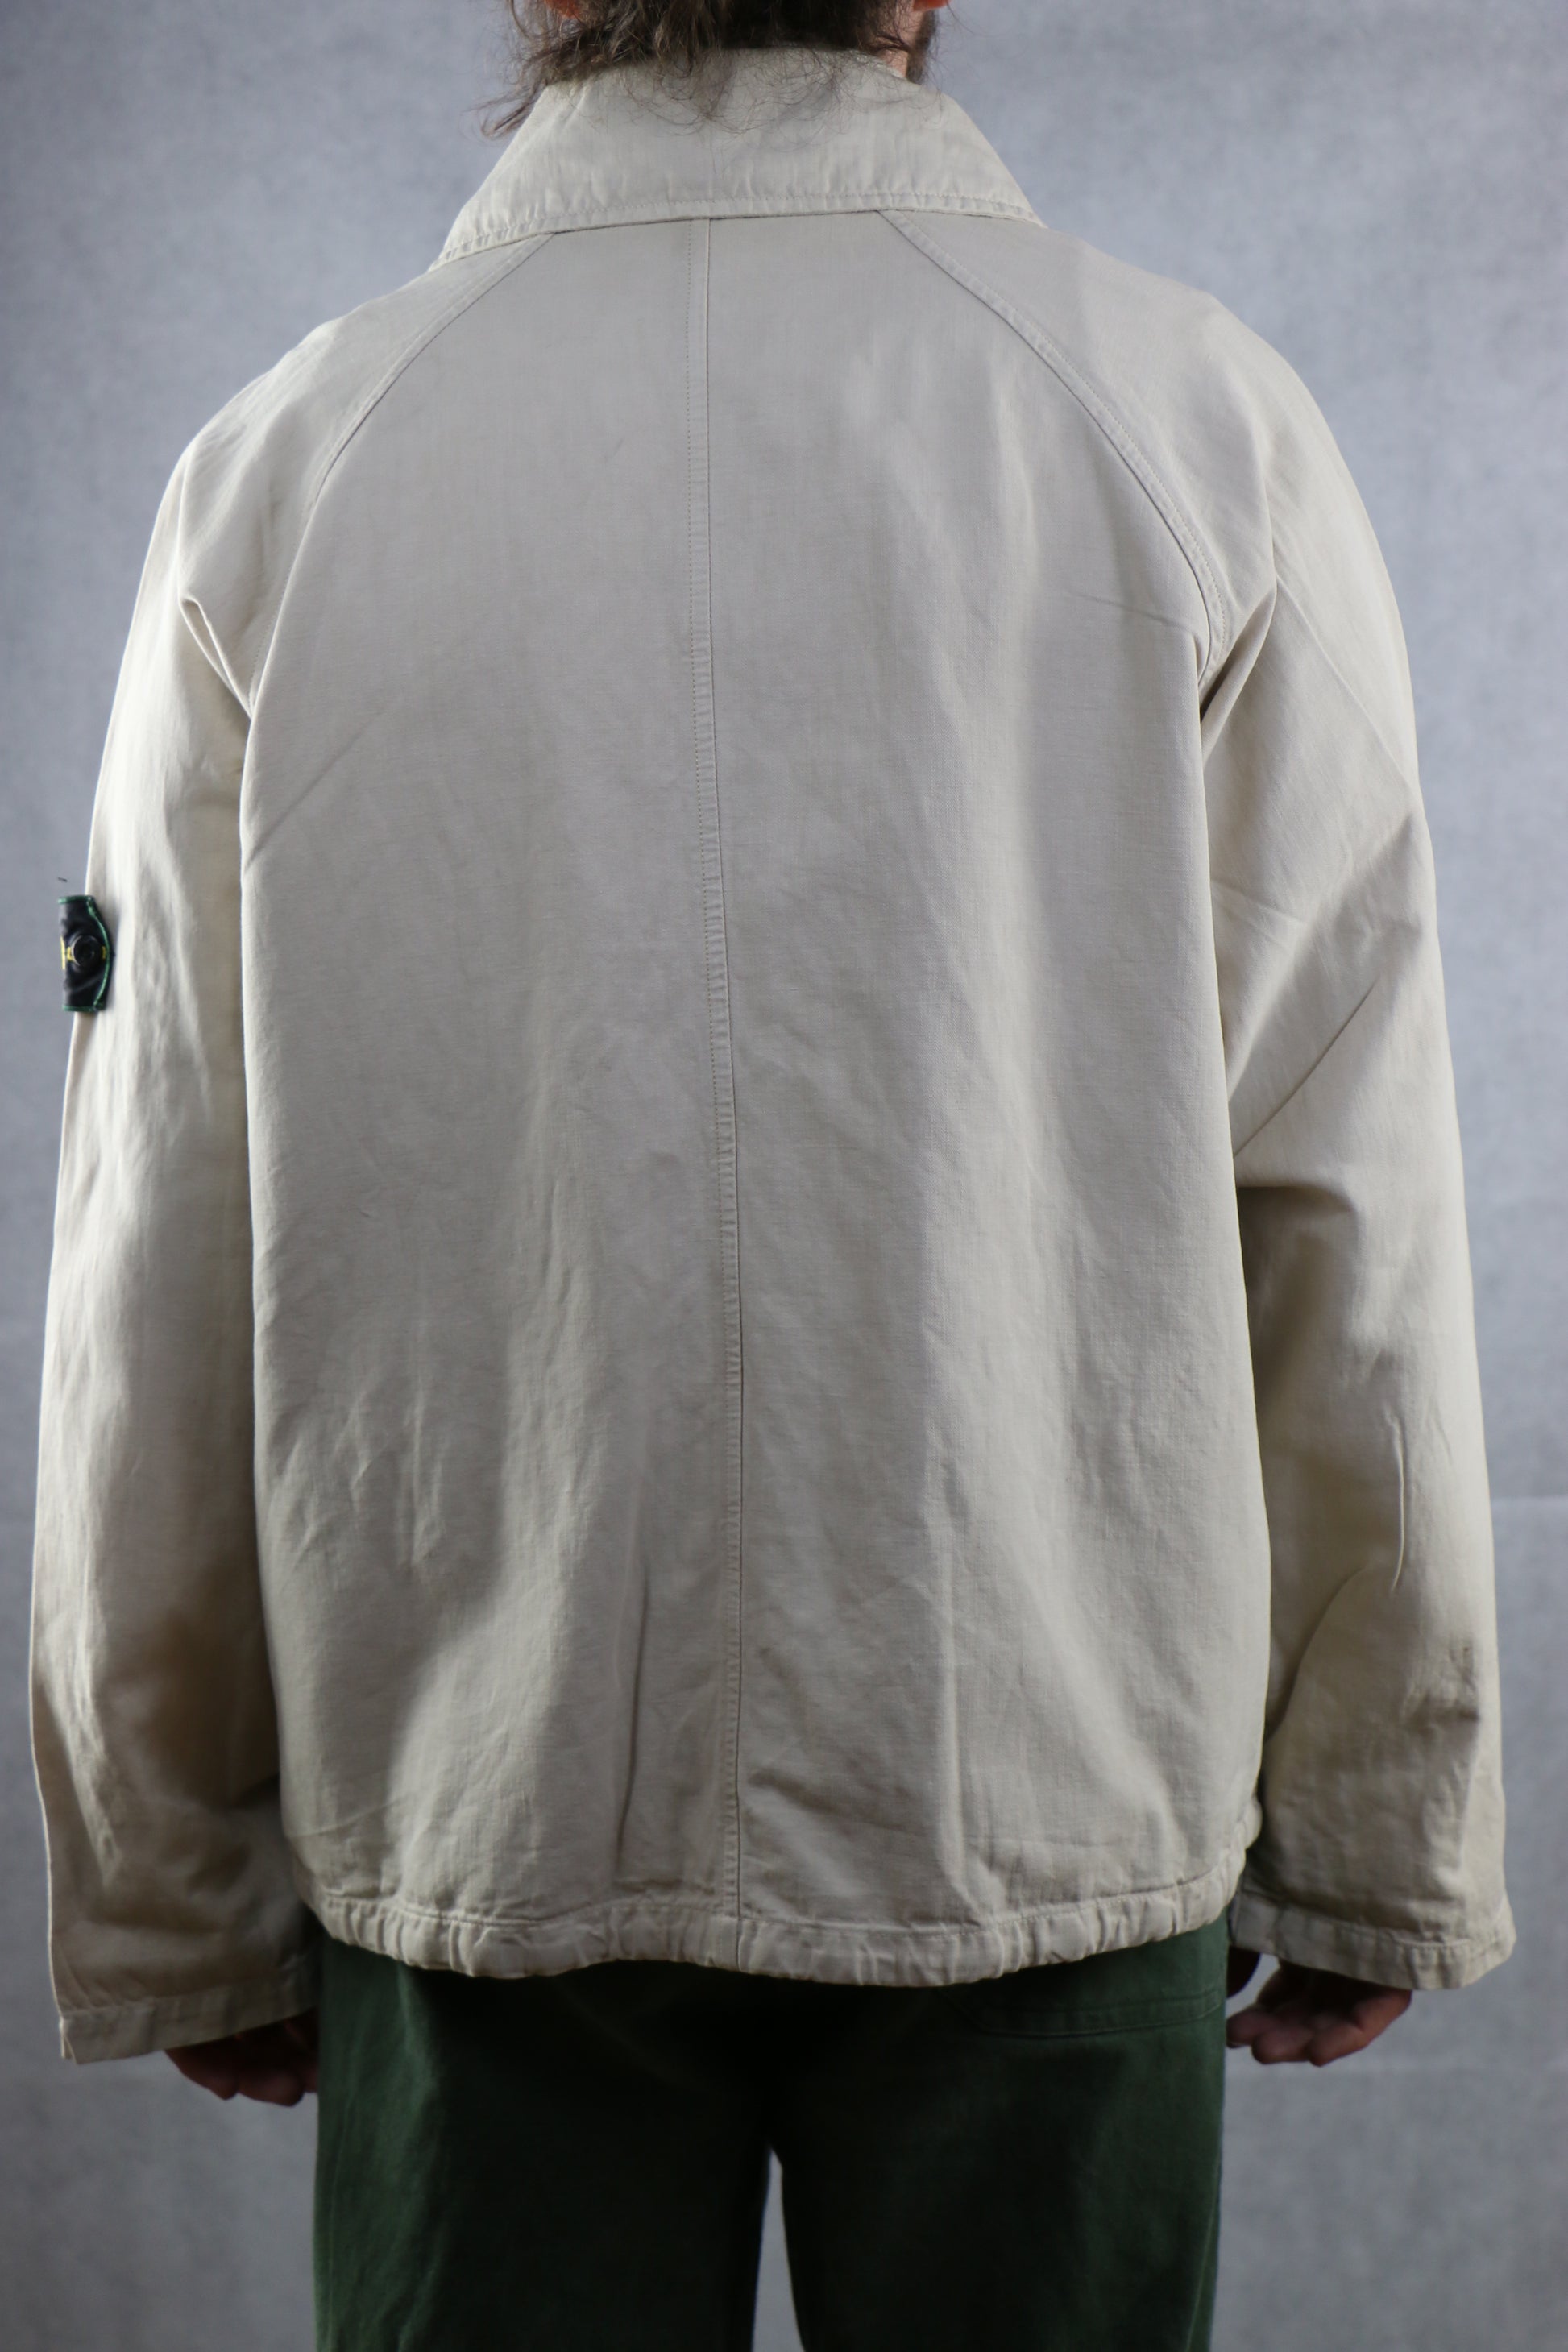 Stone Island Leinen Jacket - vintage clothing clochard92.com